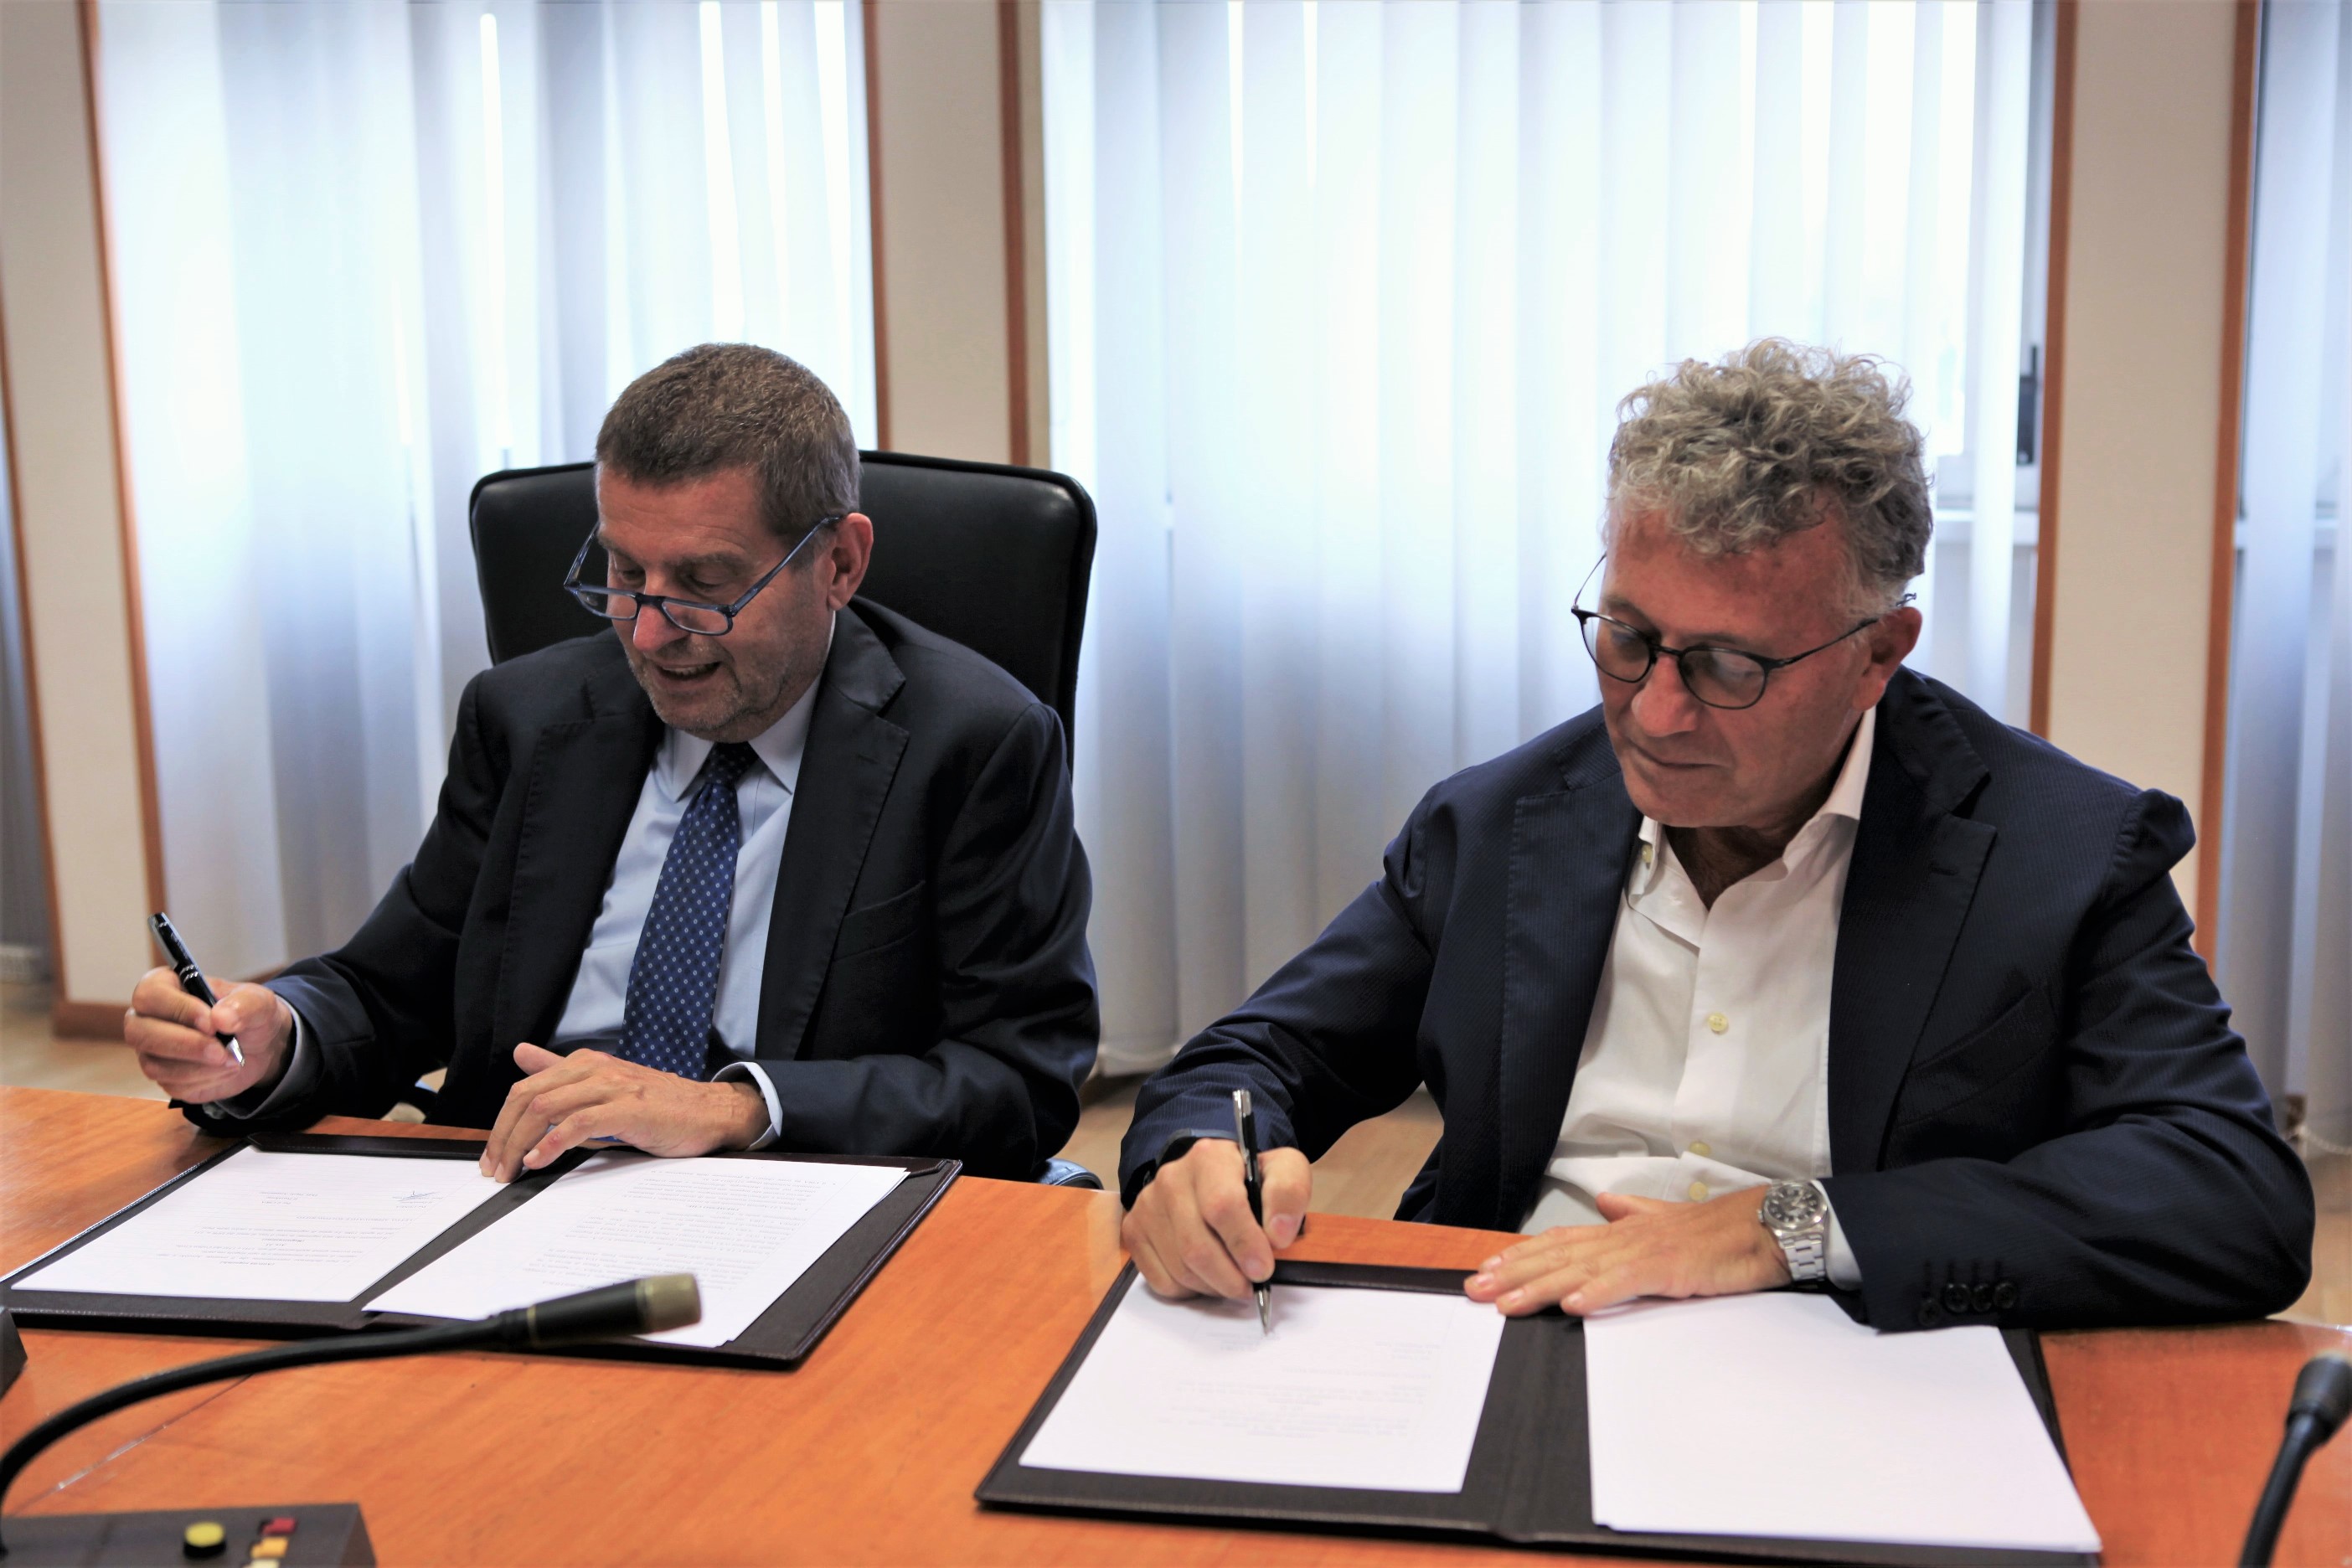  ENEA e CIRA rafforzano la partnership per la ricerca scientifica e tecnologica con un accordo quadro